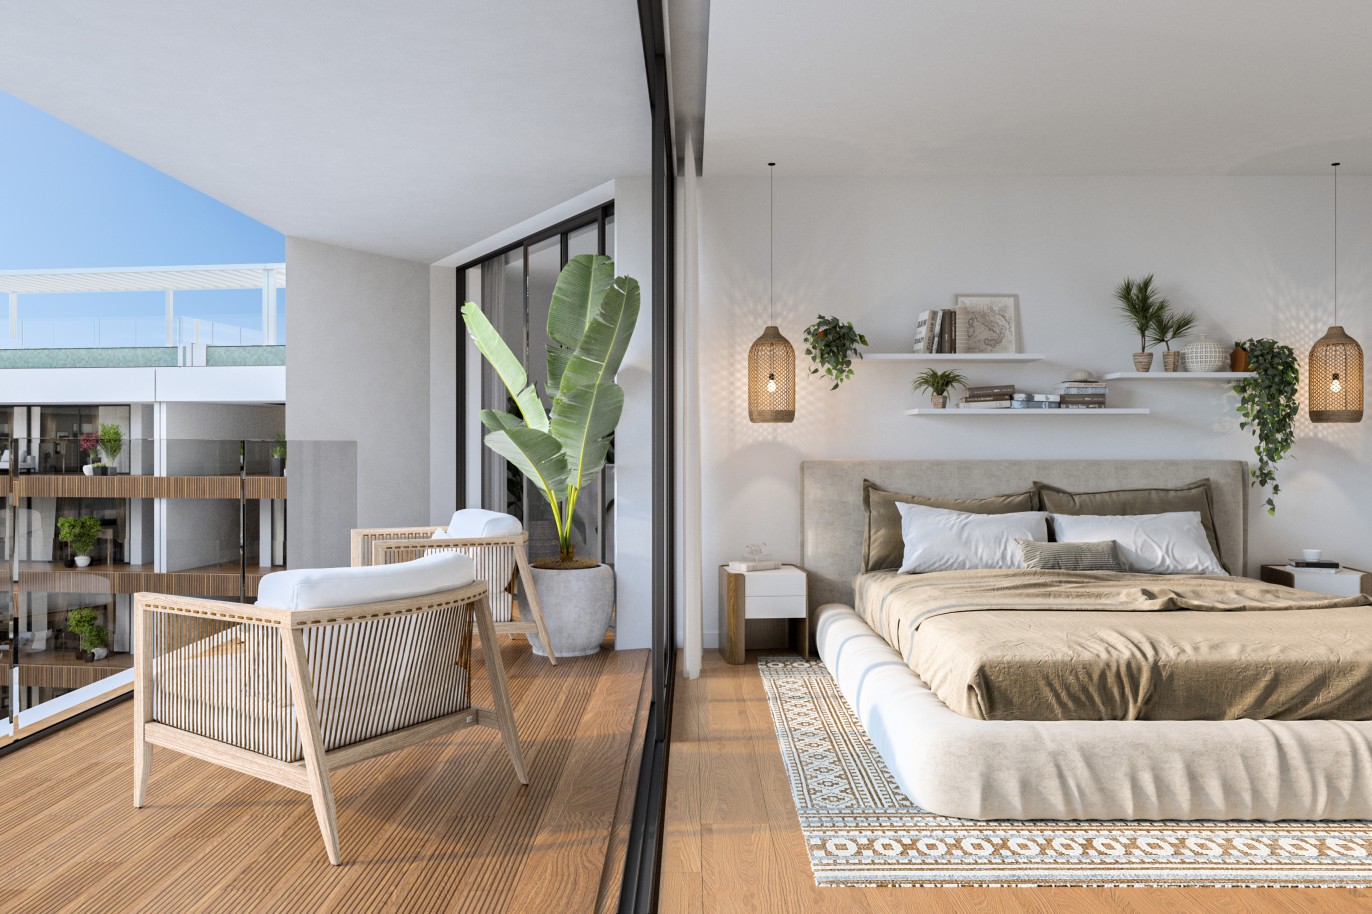 Appartements neufs avec vue sur mer, 1, 2 & 3 chambres, à vendre à Olhão, Algarve_244655